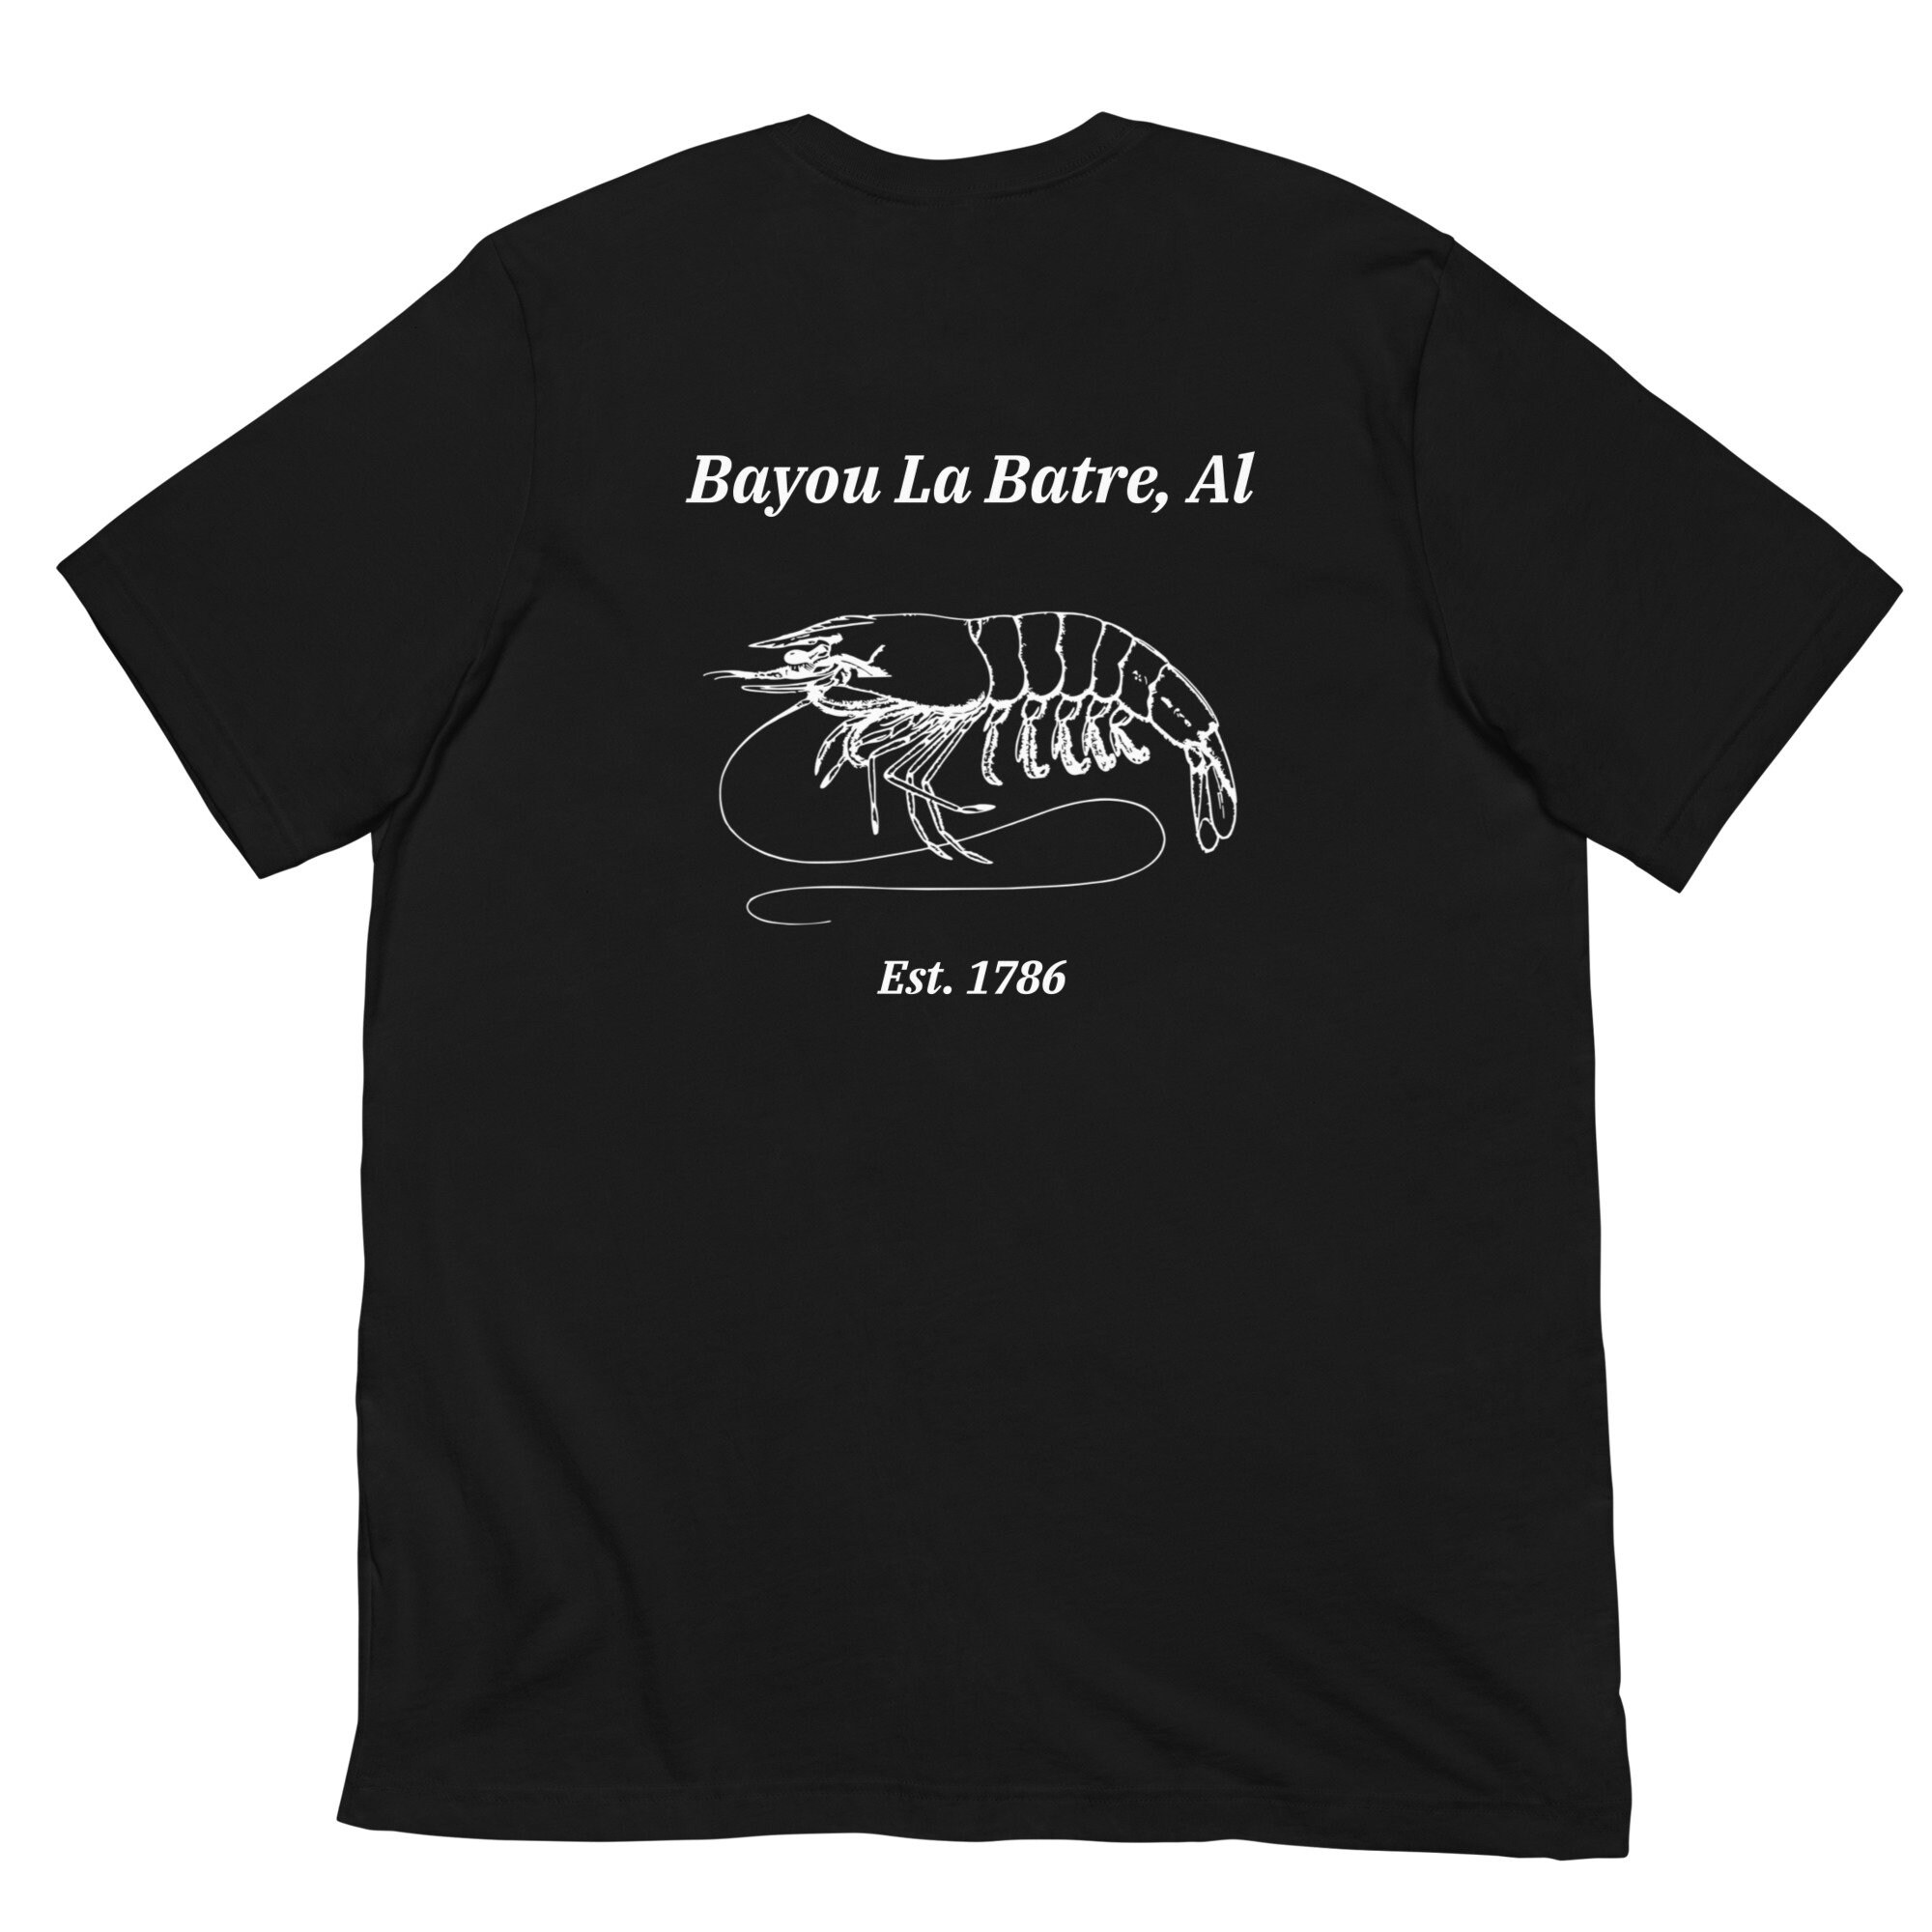 Bayou La Batre Shrimp T-shrit Unisex T-shirt 